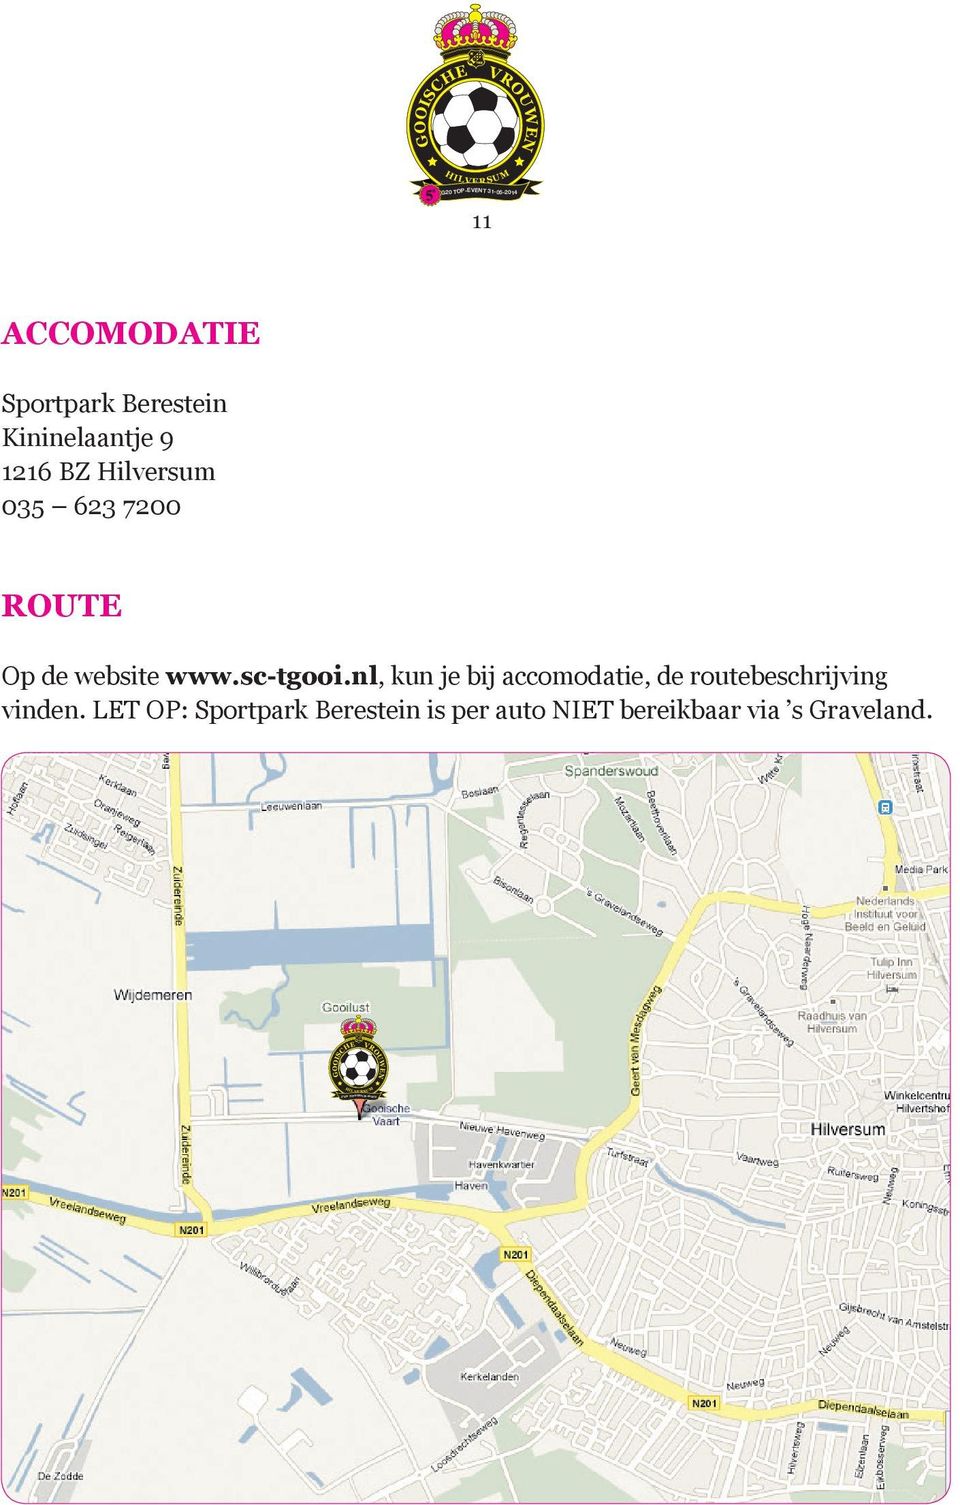 www.sc-tgooi.nl, kun je bij accomodatie, de routebeschrijving vinden.